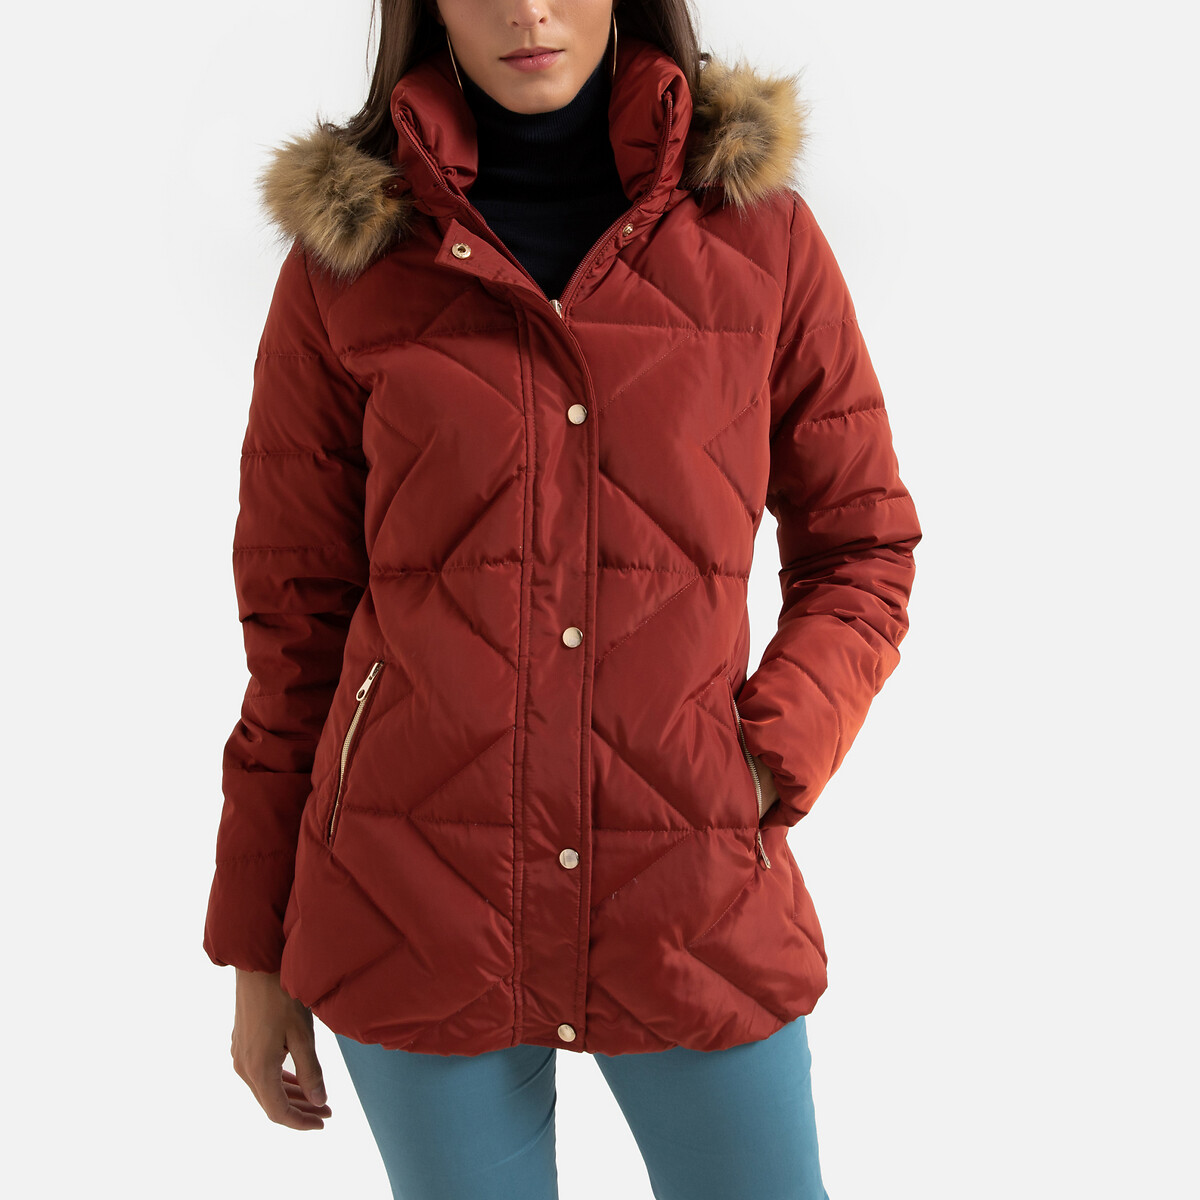 Куртка La Redoute Стеганая с капюшоном зимняя 50 (FR) - 56 (RUS) оранжевый, размер 50 (FR) - 56 (RUS)